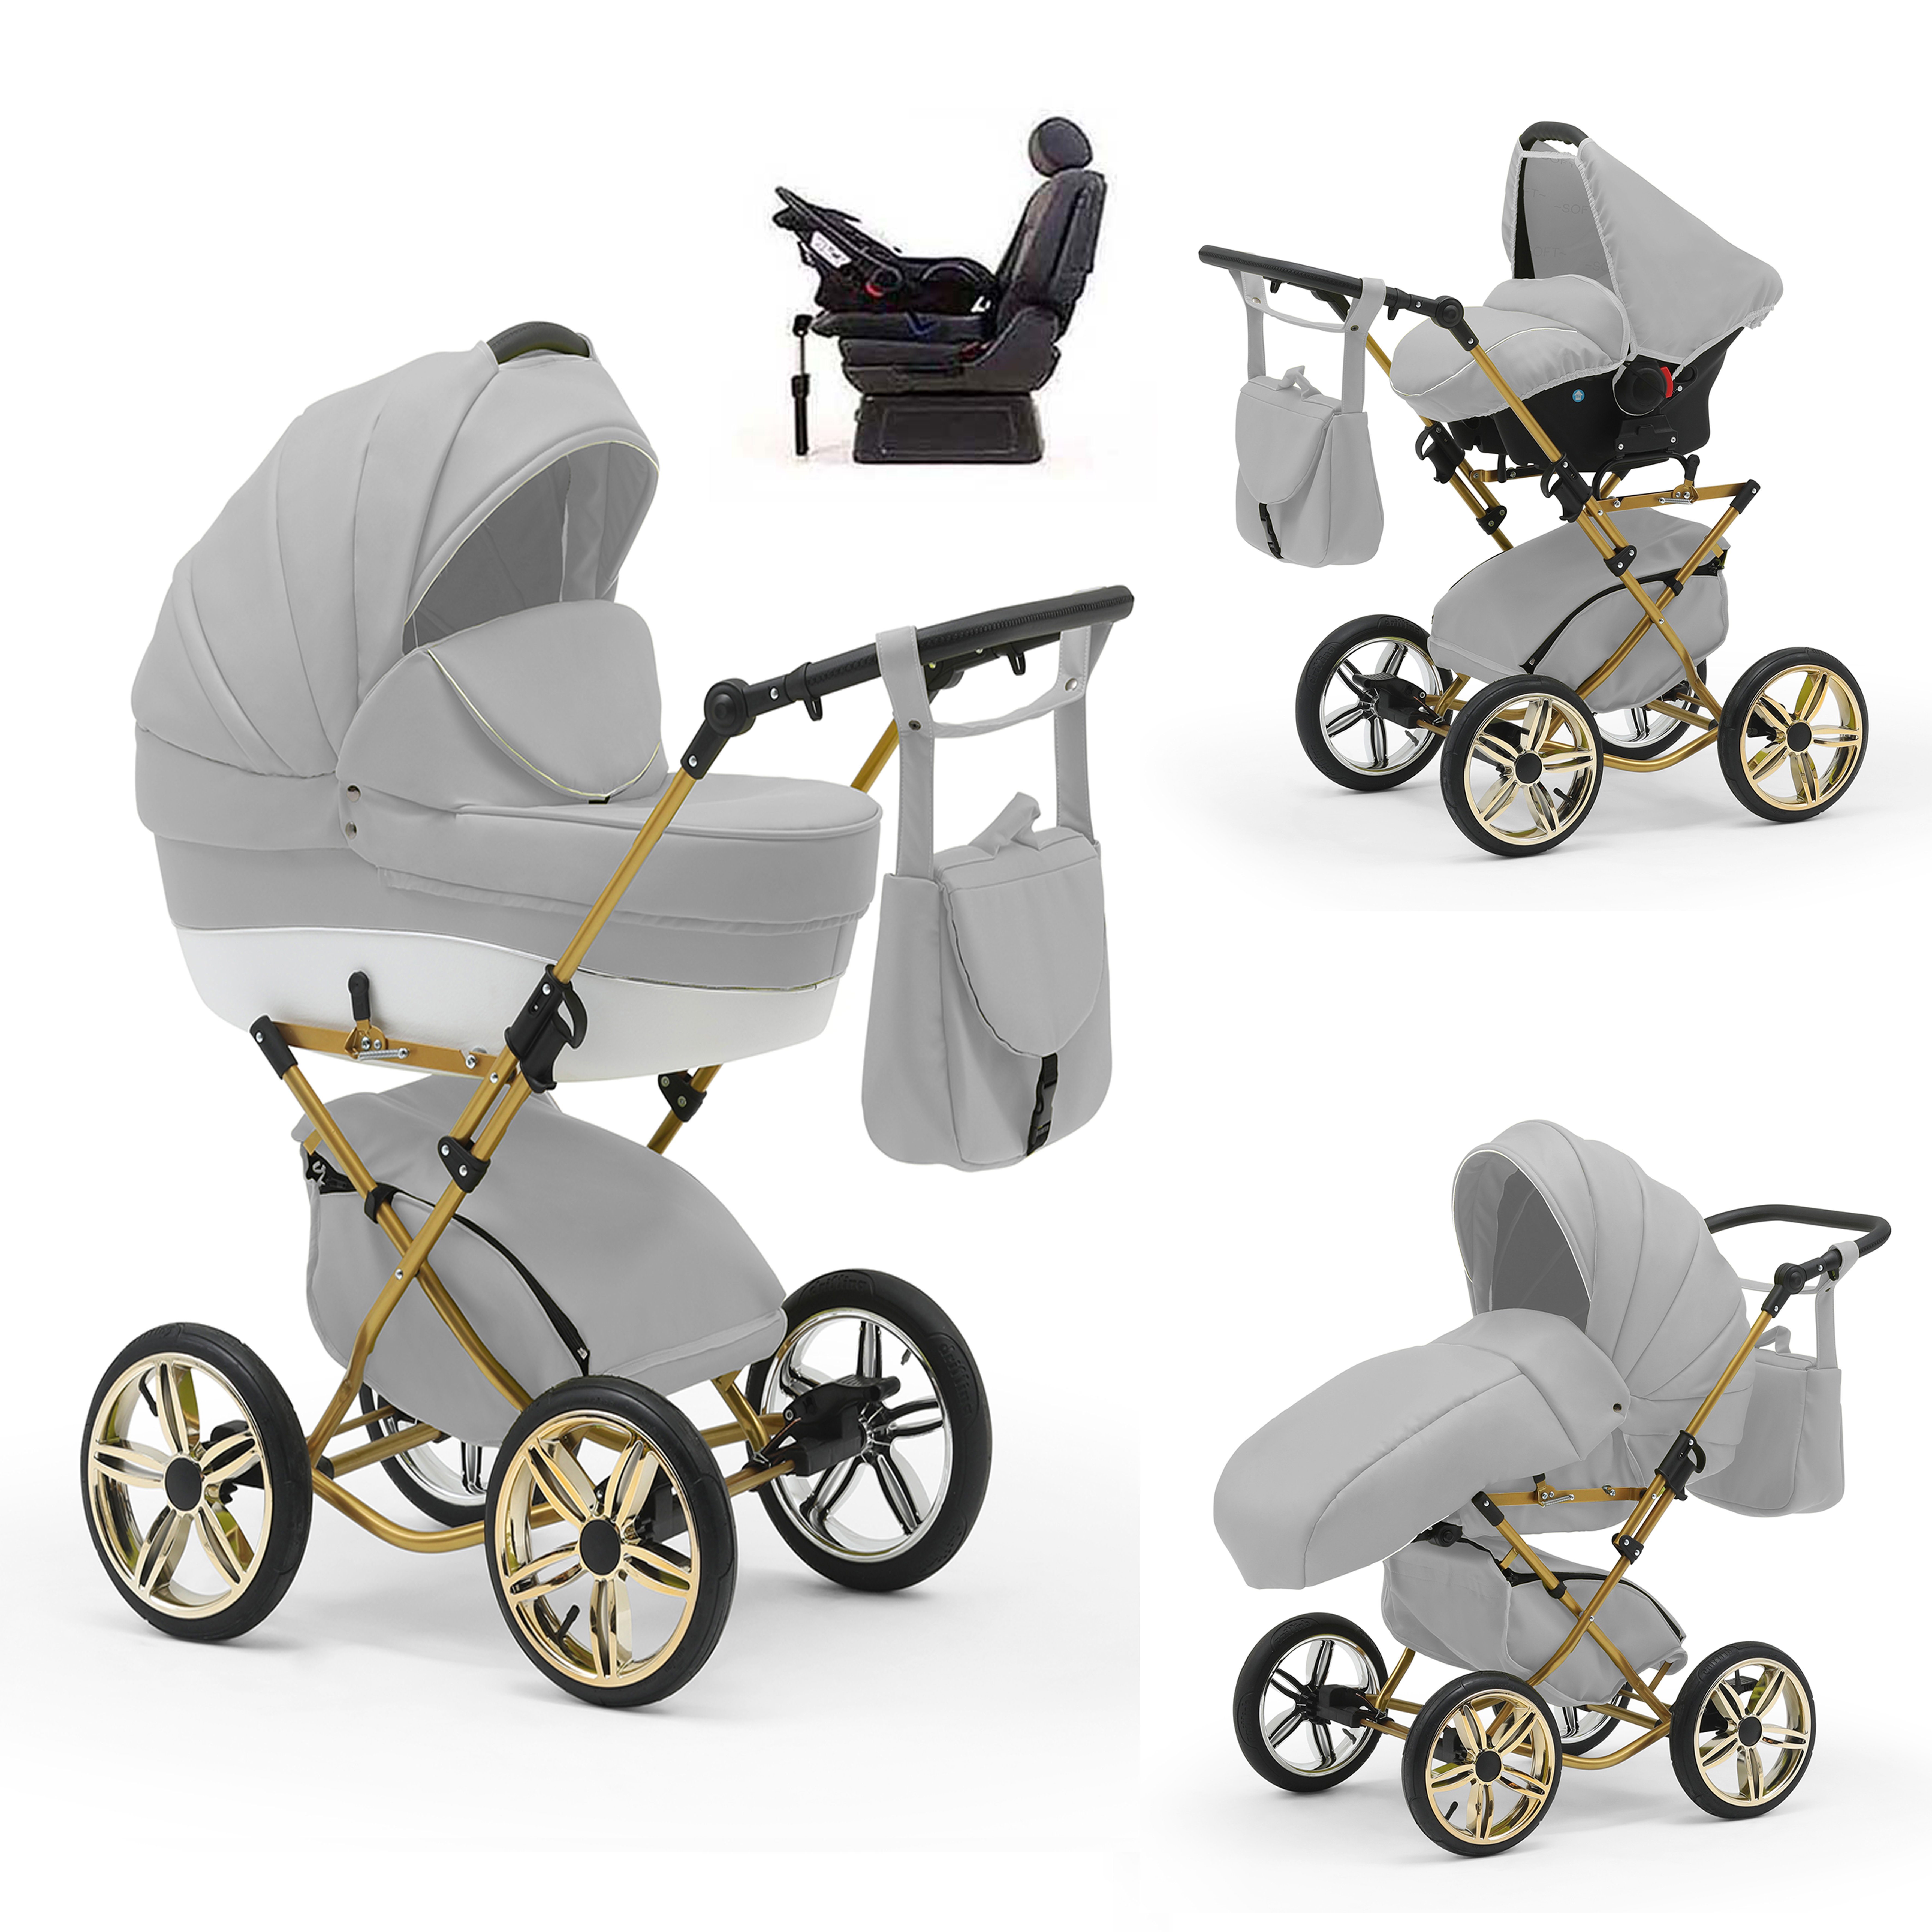 babies-on-wheels Kombi-Kinderwagen Sorento 4 in 1 inkl. Autositz und Iso Base - 14 Teile - in 10 Designs Hellgrau-Weiß